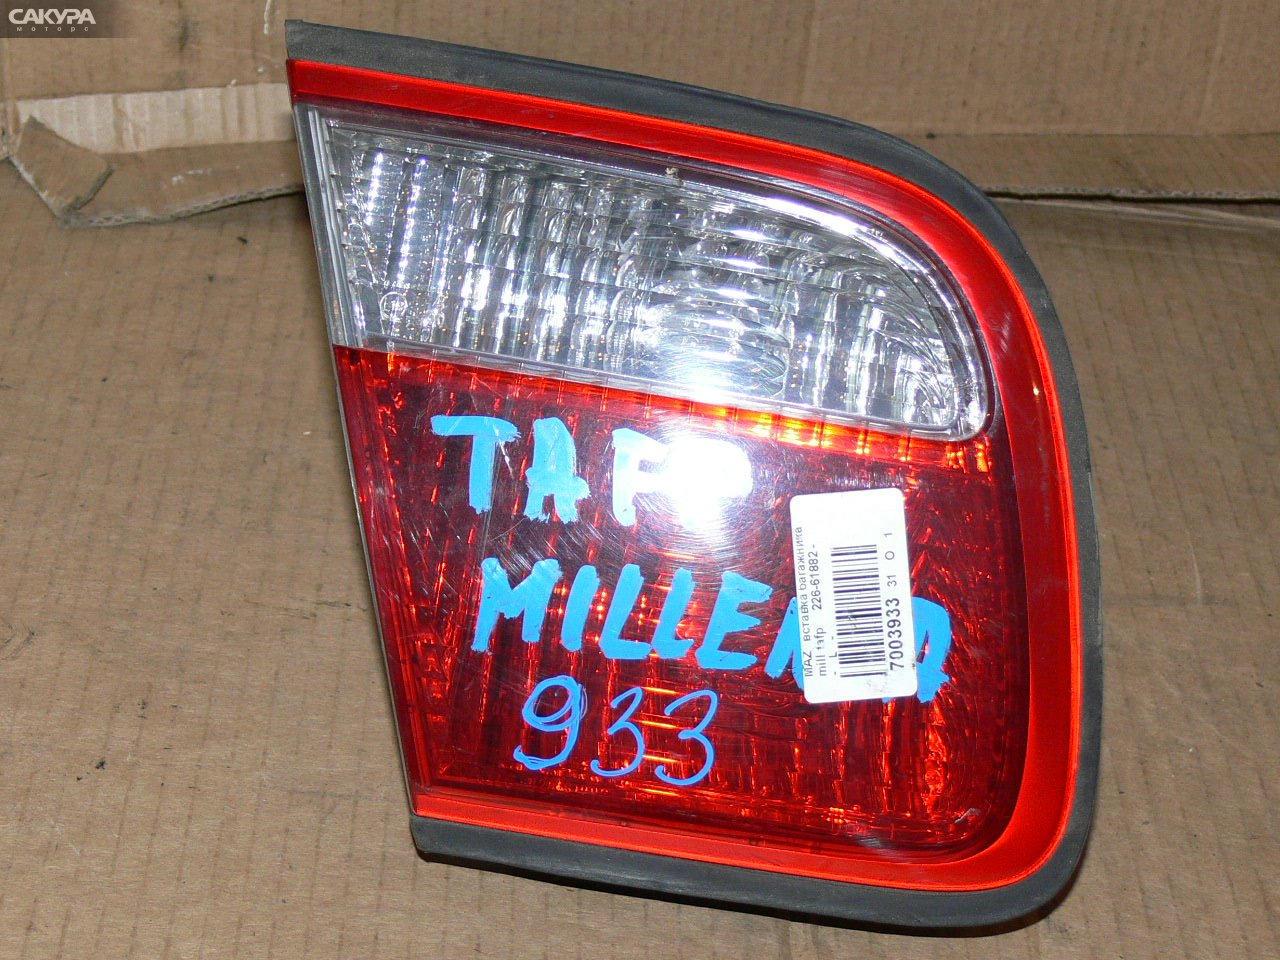 Фонарь вставка багажника левый Mazda Millenia TAFP 226-61882: купить в Сакура Иркутск.